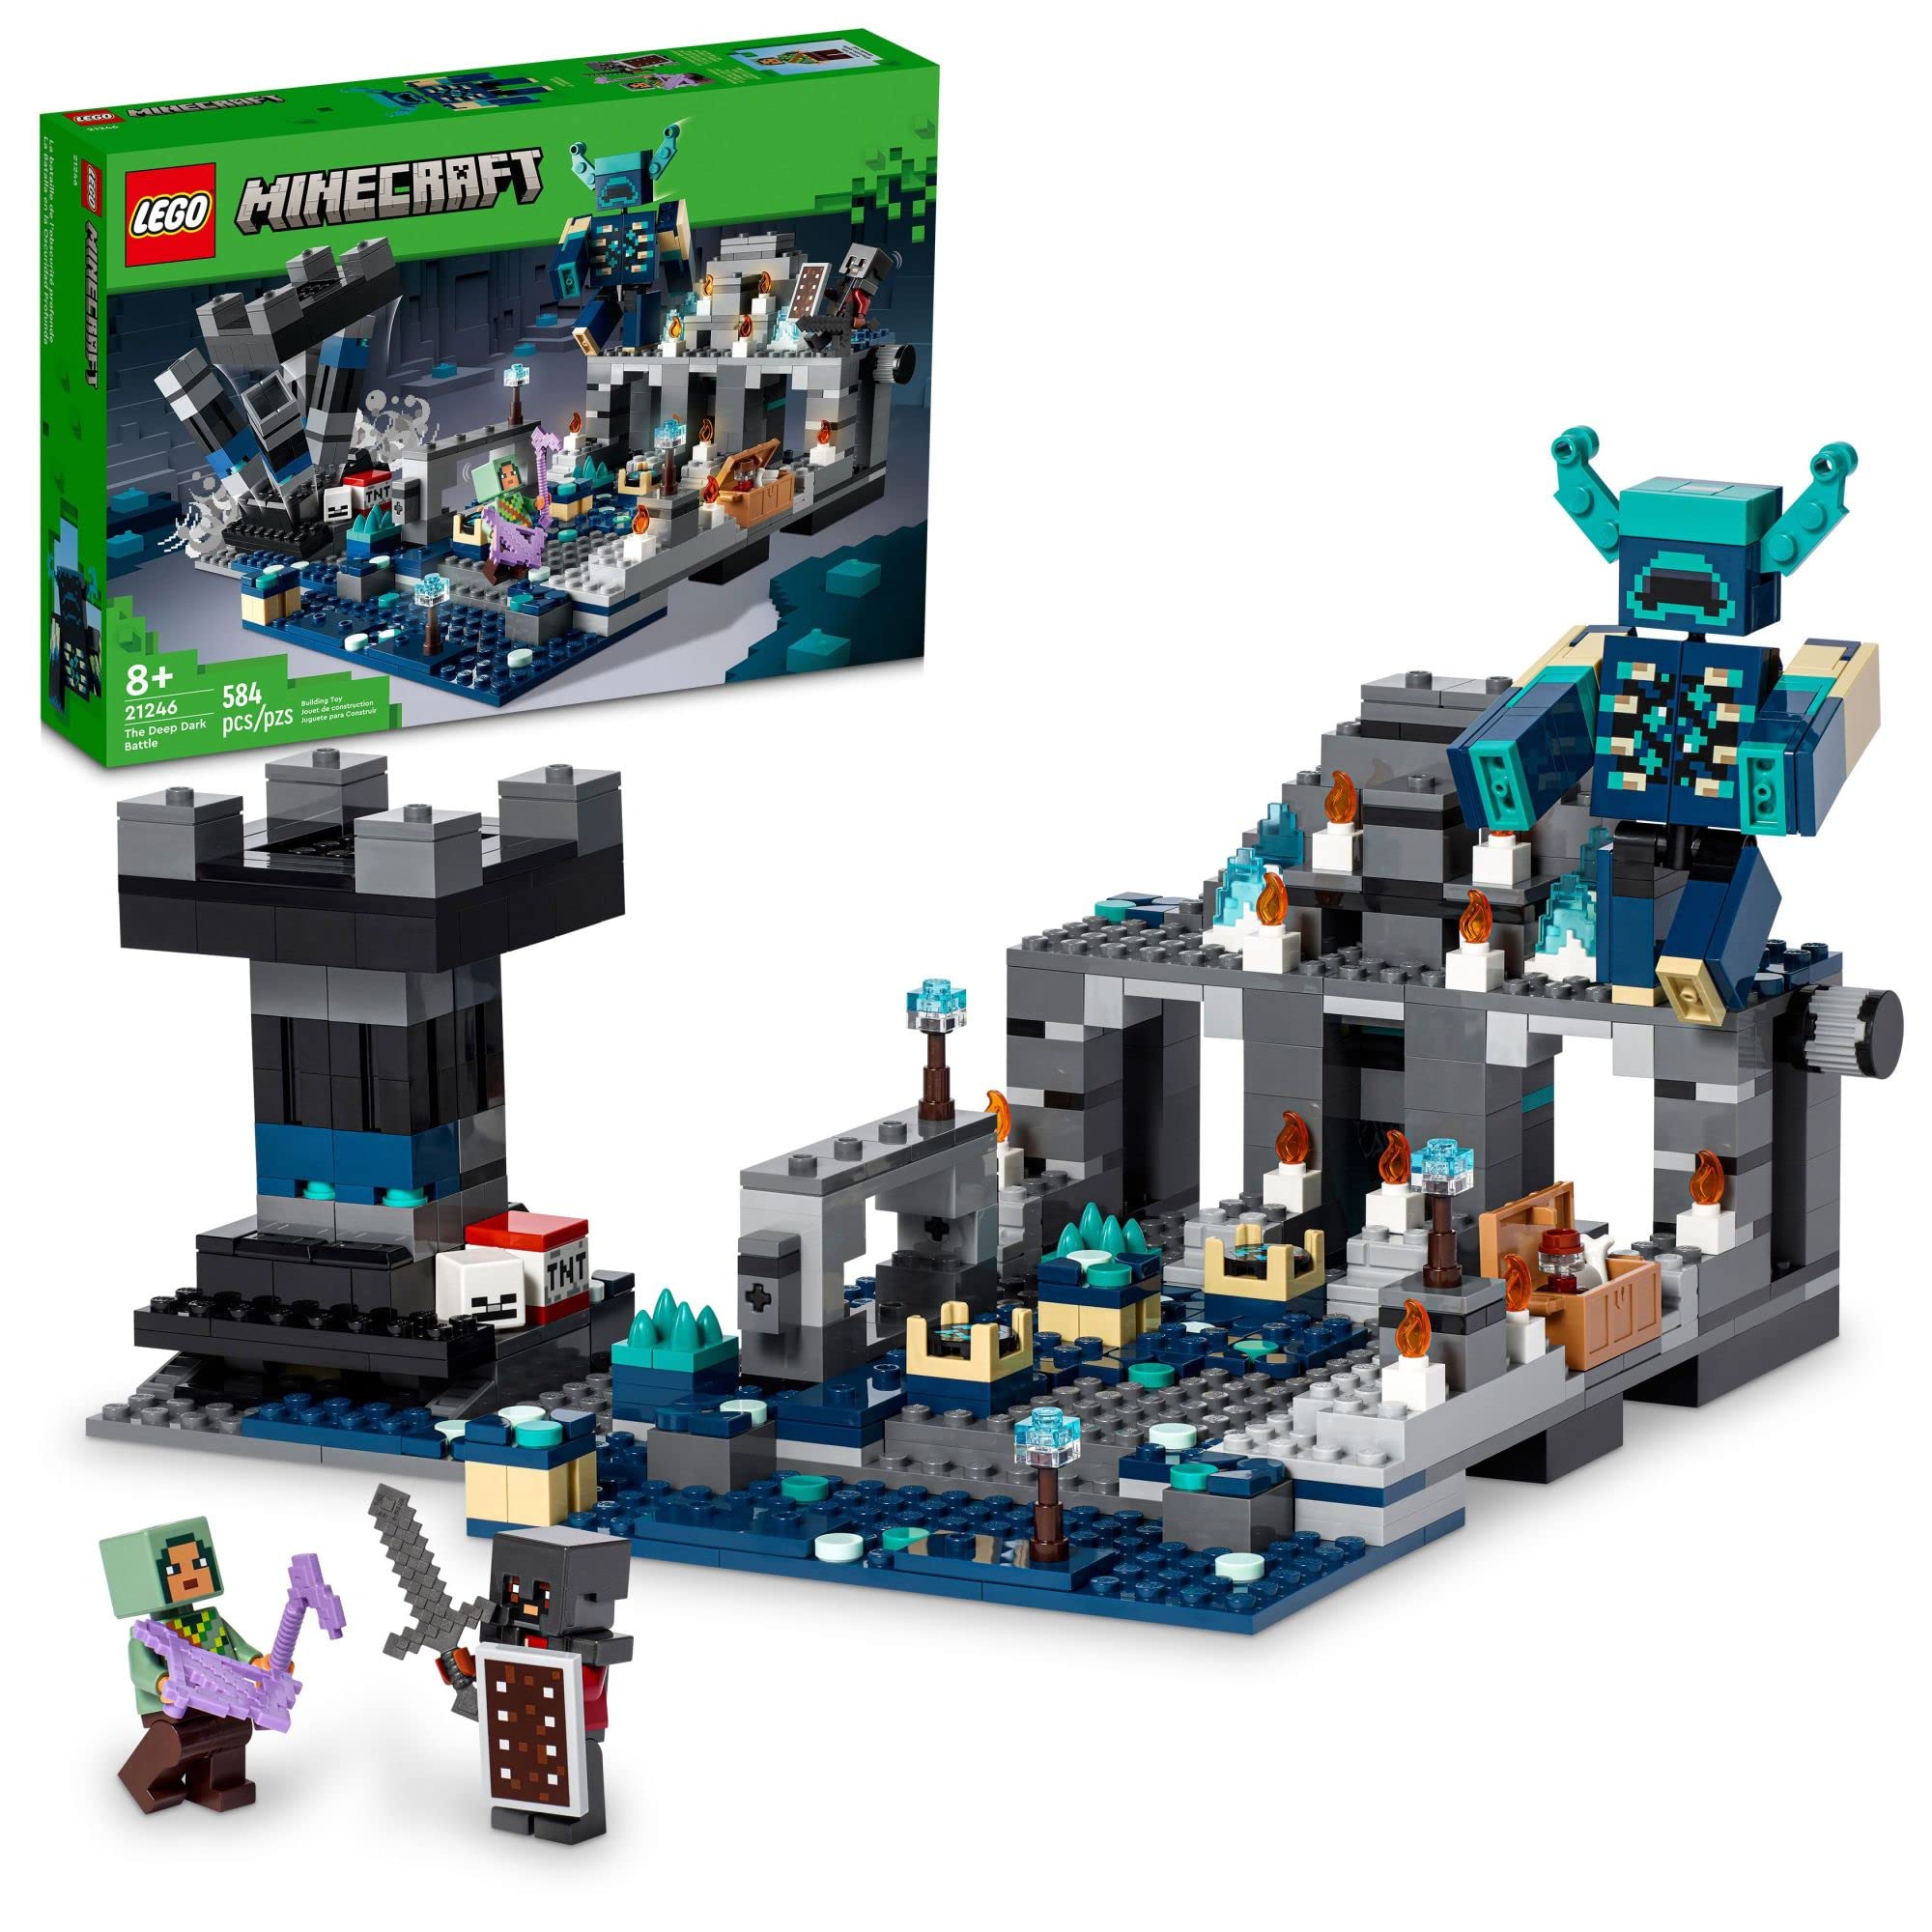 LEGO Minecraft 深暗战斗套装，21246 生物群落冒险玩具，带典狱长人偶的古城、爆炸塔和宝箱，适...